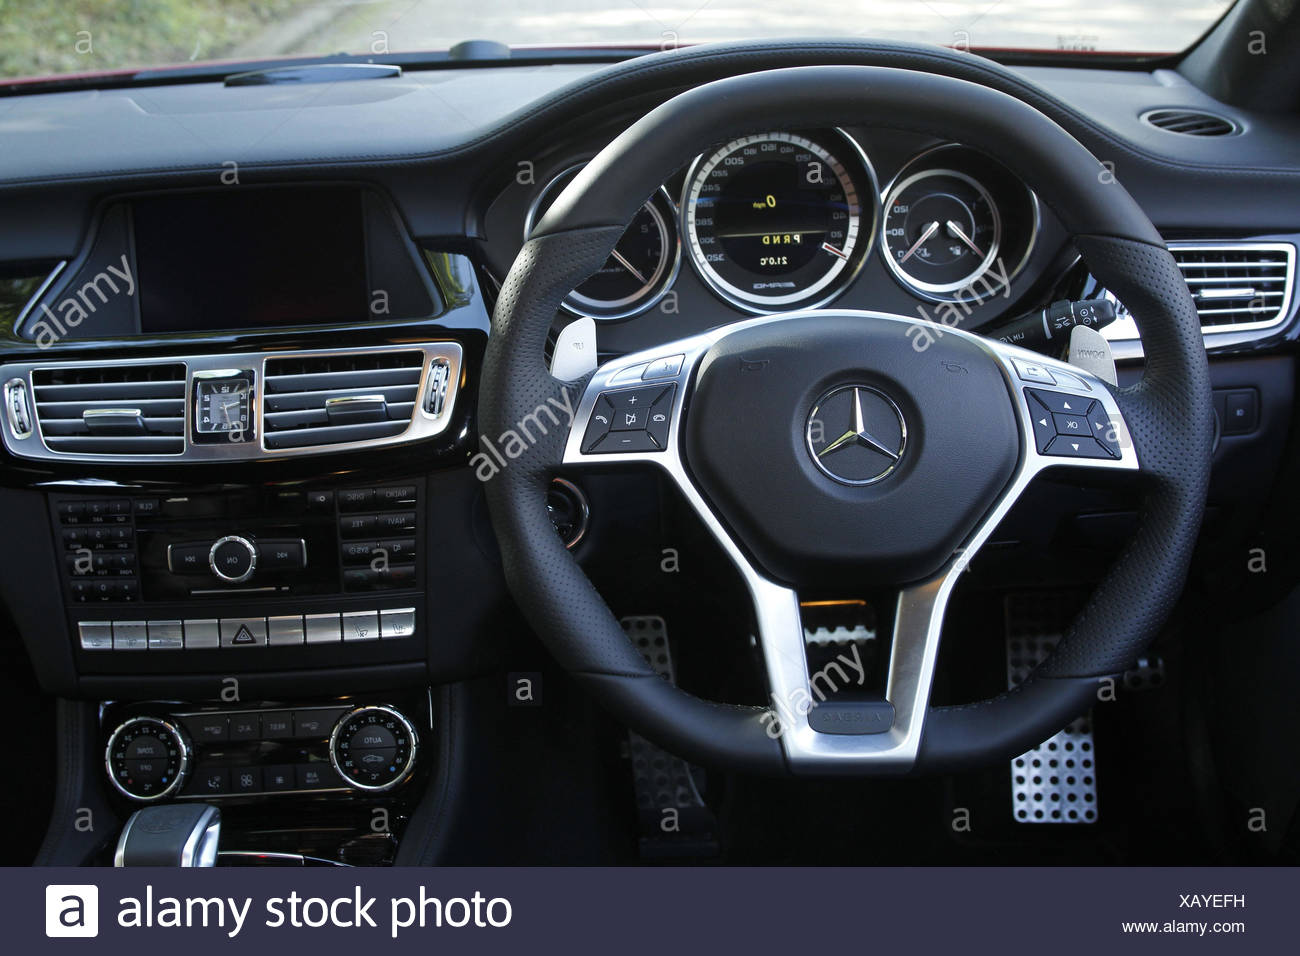 Armatures Car Mercedes Cls 63 Amg Interior Tax Stock